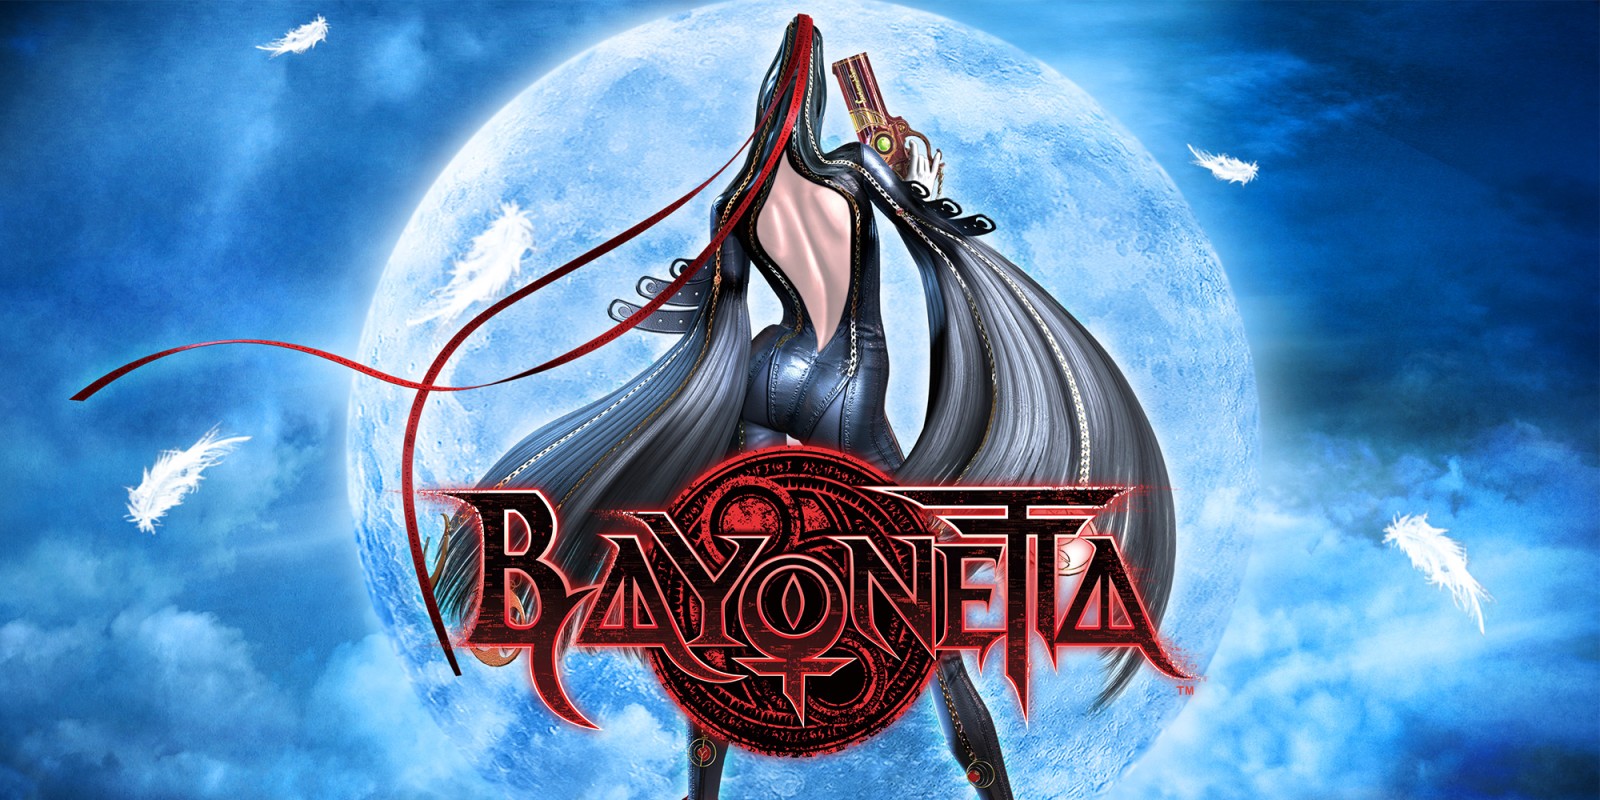 Nintendo diz que o desenvolvimento de Bayonetta 3 está indo muito bem